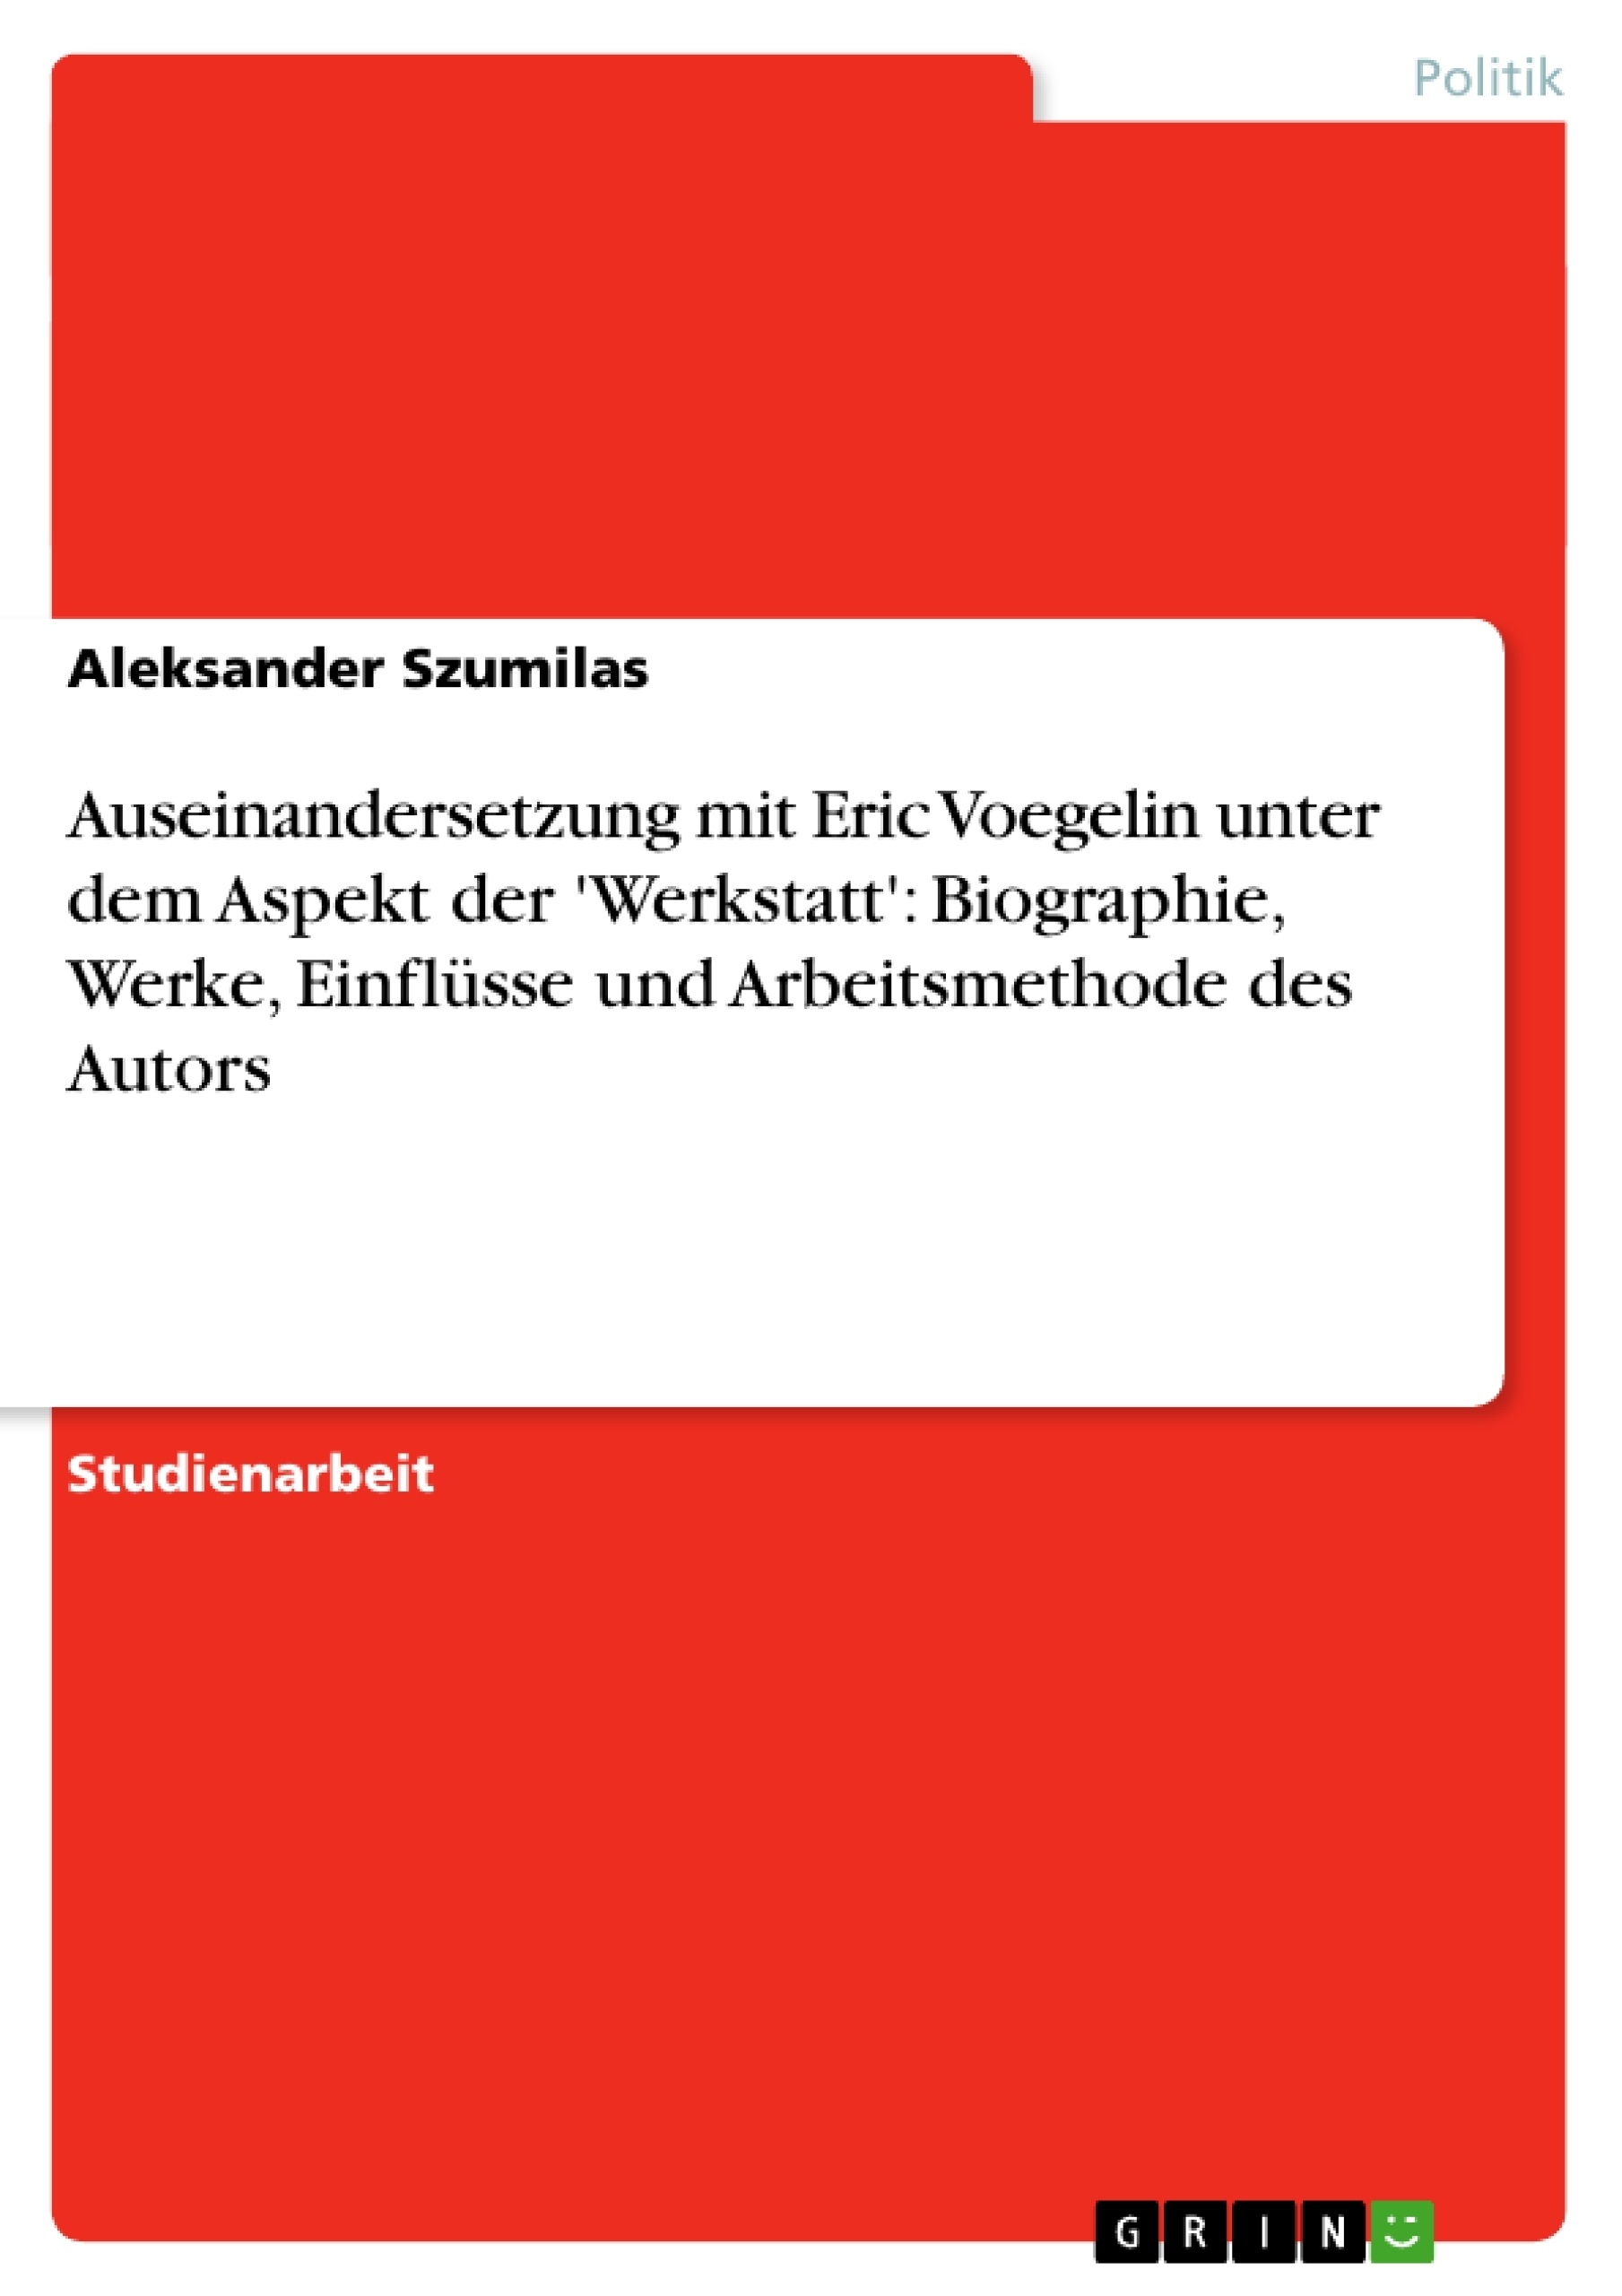 Titel: Auseinandersetzung mit Eric Voegelin unter dem Aspekt der 'Werkstatt':  Biographie, Werke, Einflüsse und Arbeitsmethode des Autors